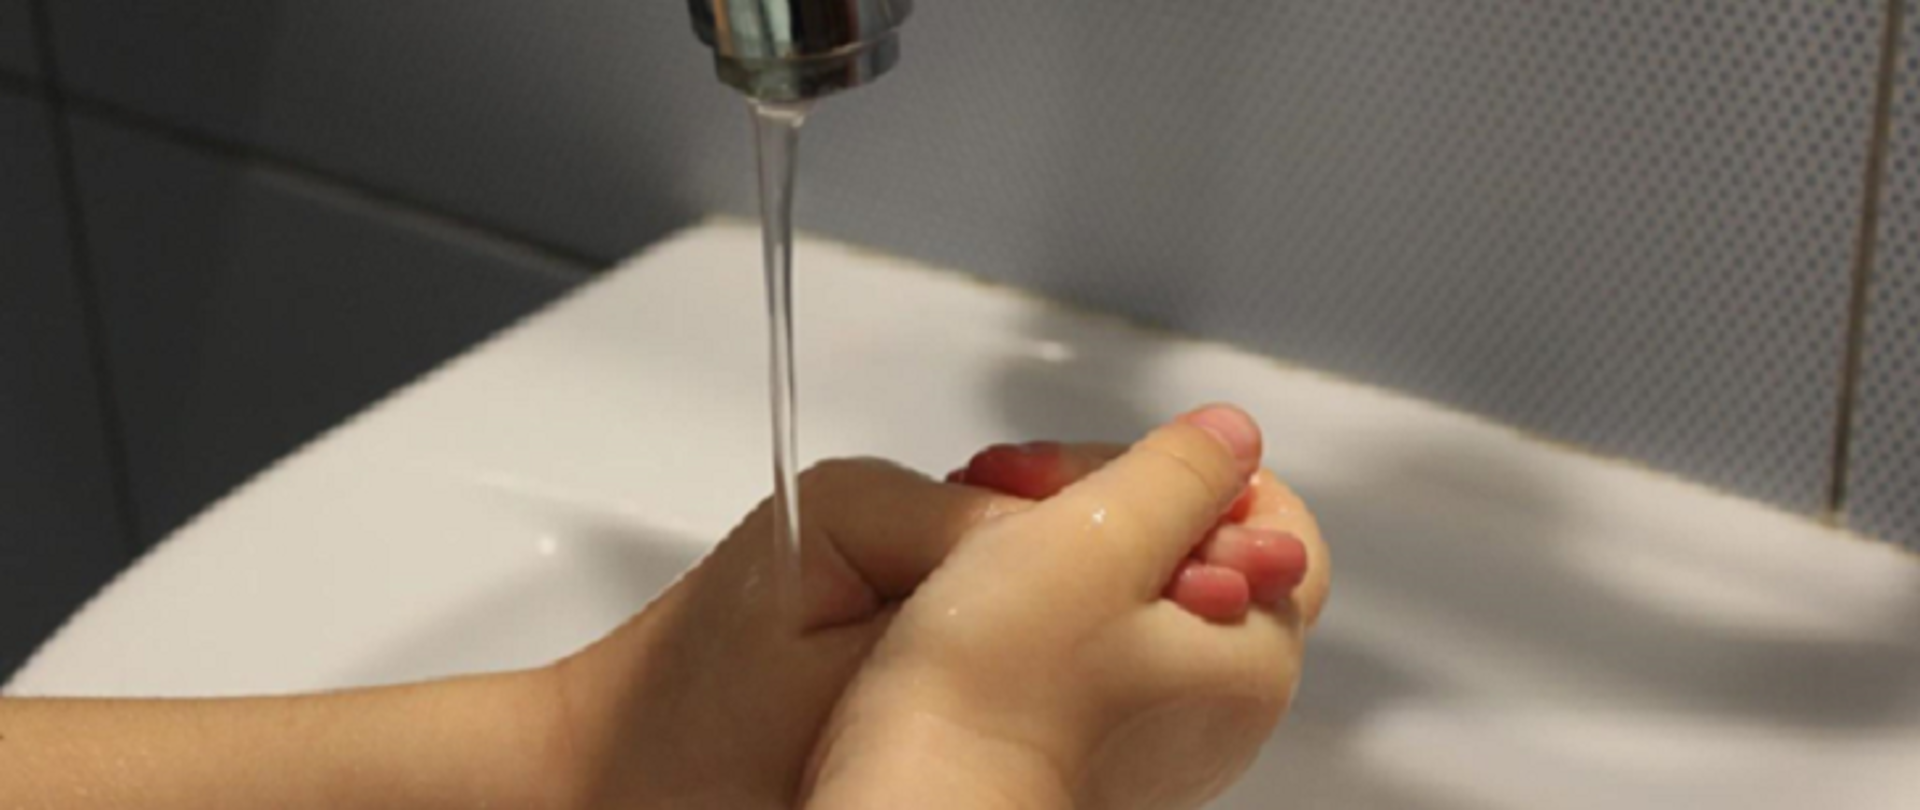 Jak myć ręce